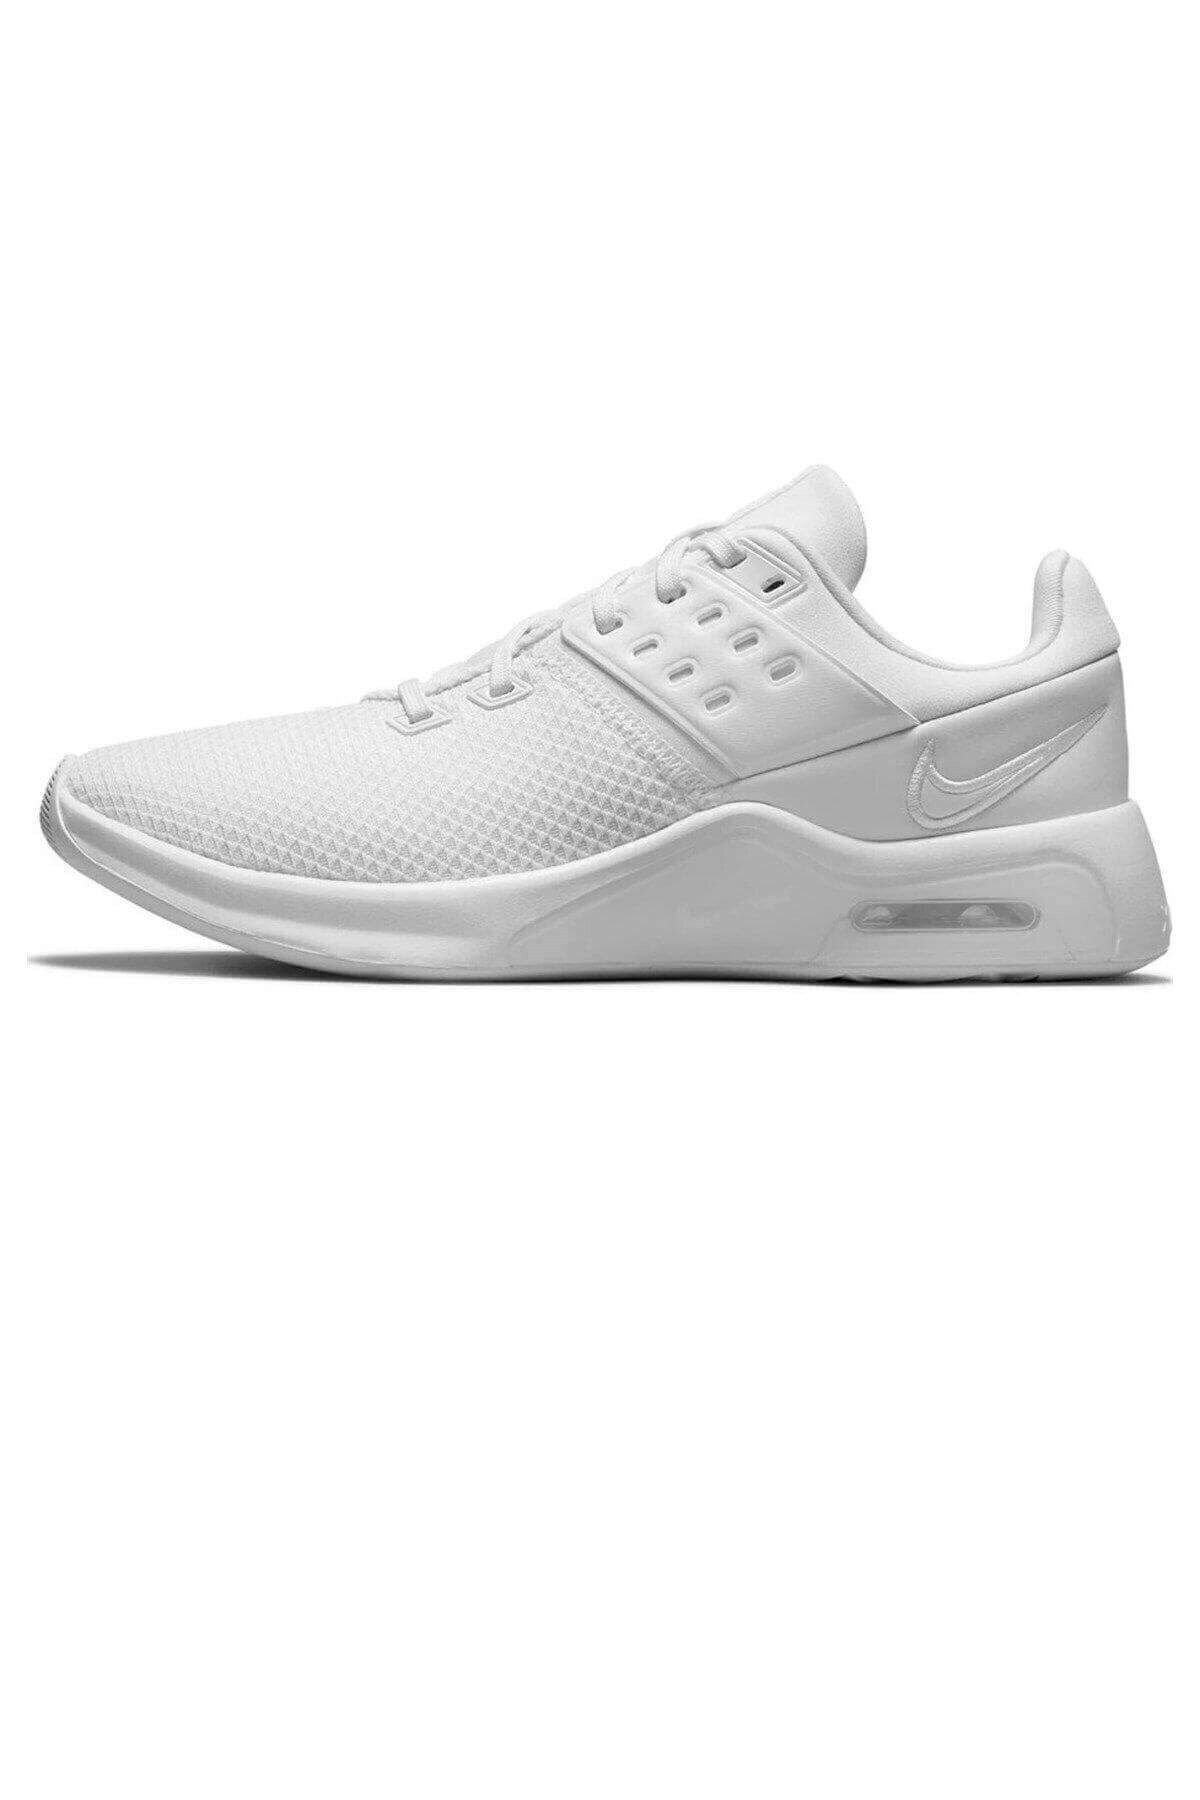 Nike Wmns Air Max Bella Tr 4 Kadın Yürüyüş Koşu Ayakkabı Cw3398-102-beyaz